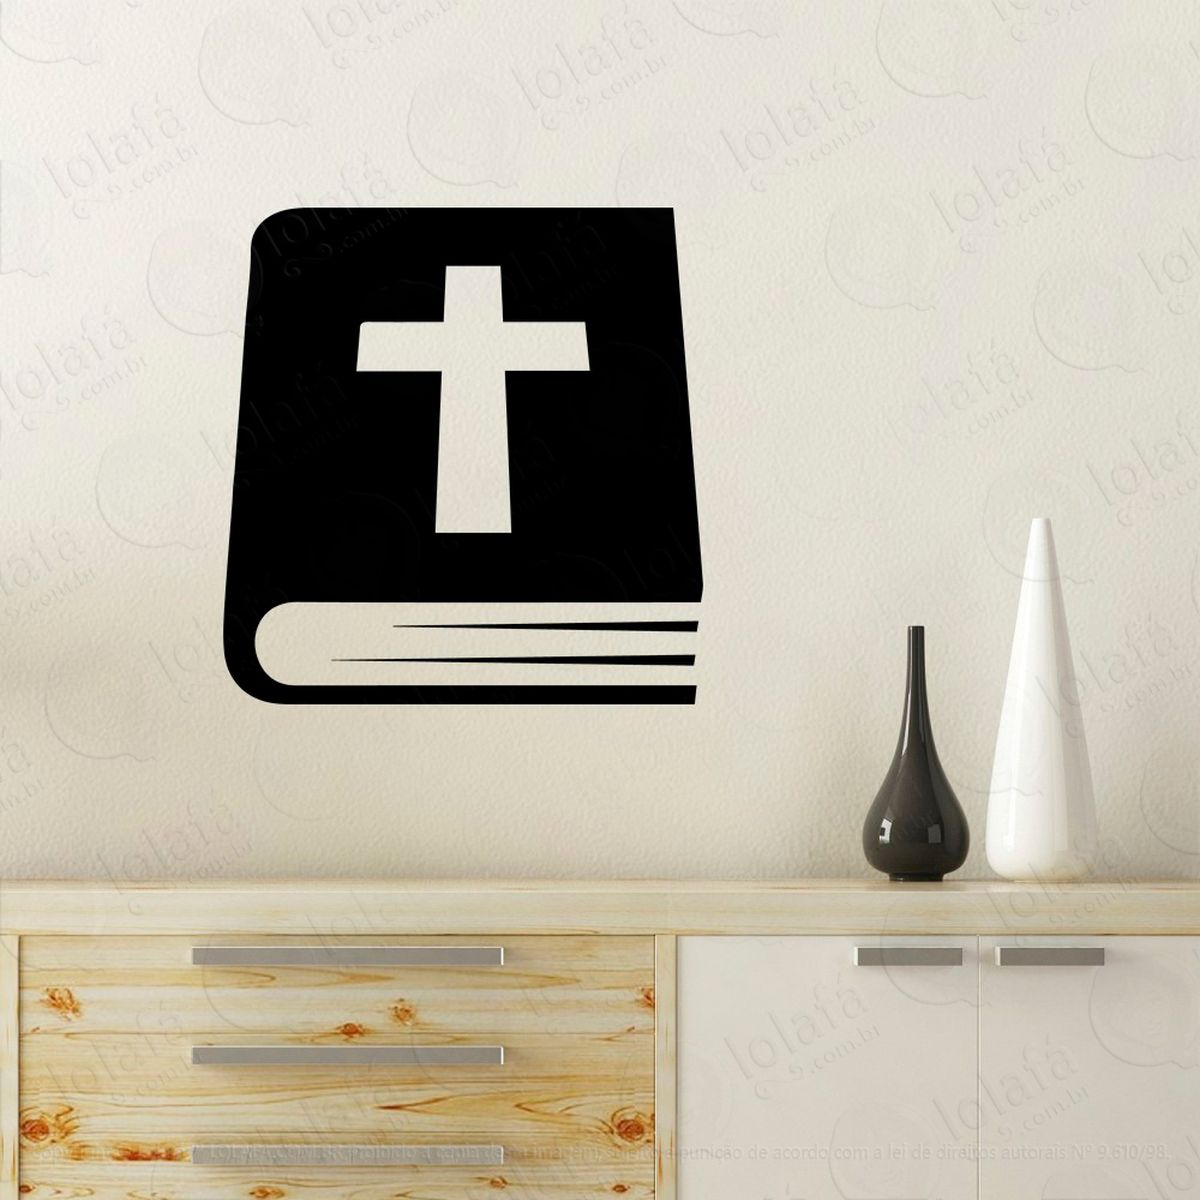 bíblia sagrada adesivo de parede decorativo para casa, quarto, sala e vidro - mod:79